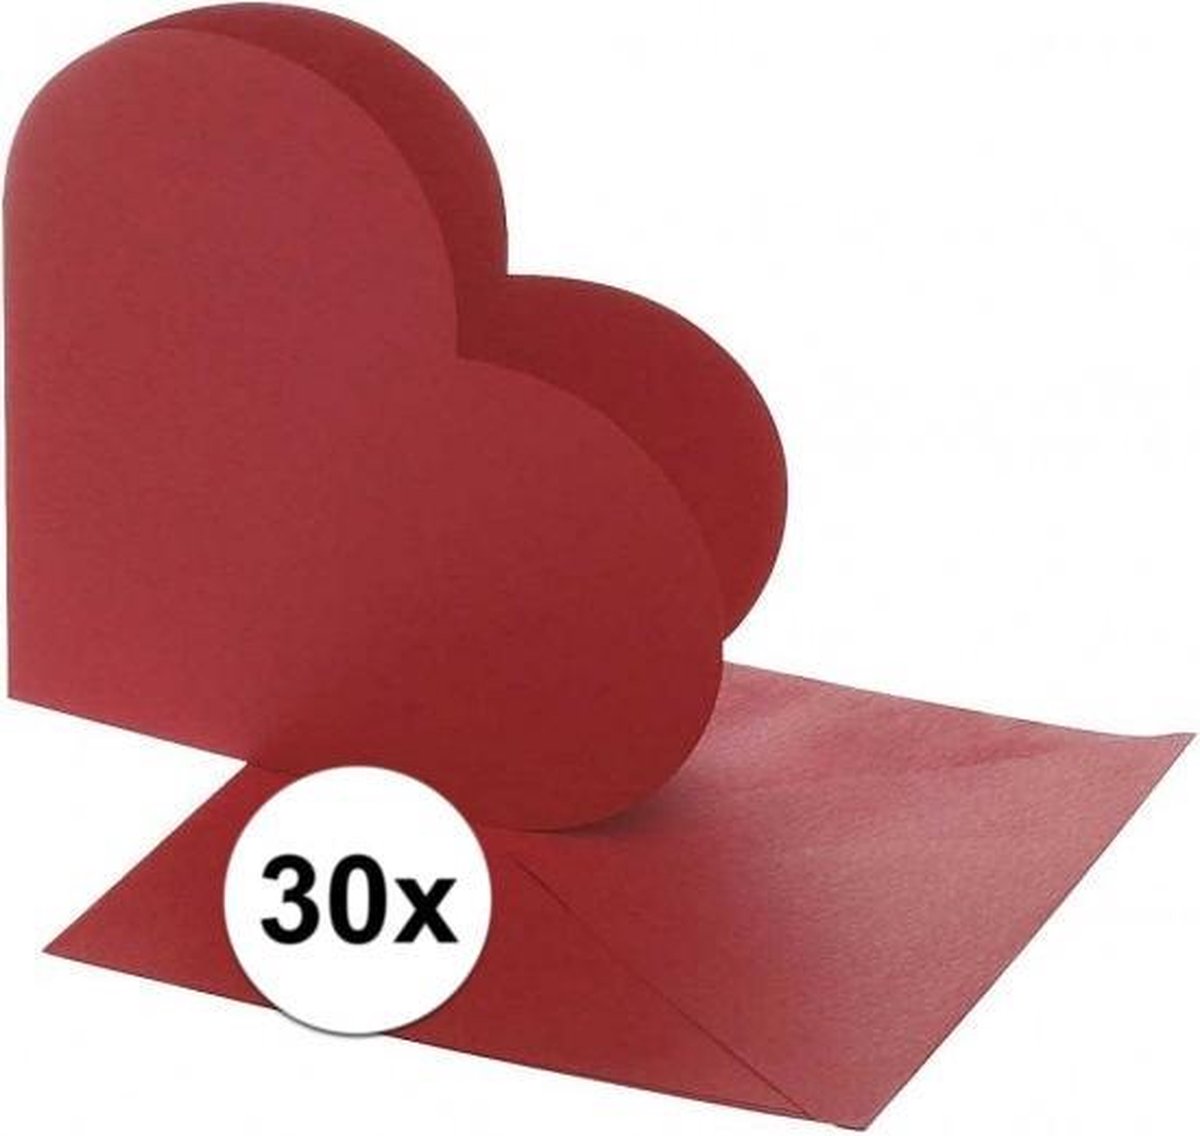 Afbeelding van product Merkloos / Sans marque  30x Hartvormige kaarten rood - Uitnodigingen - Huwelijk - Hobby